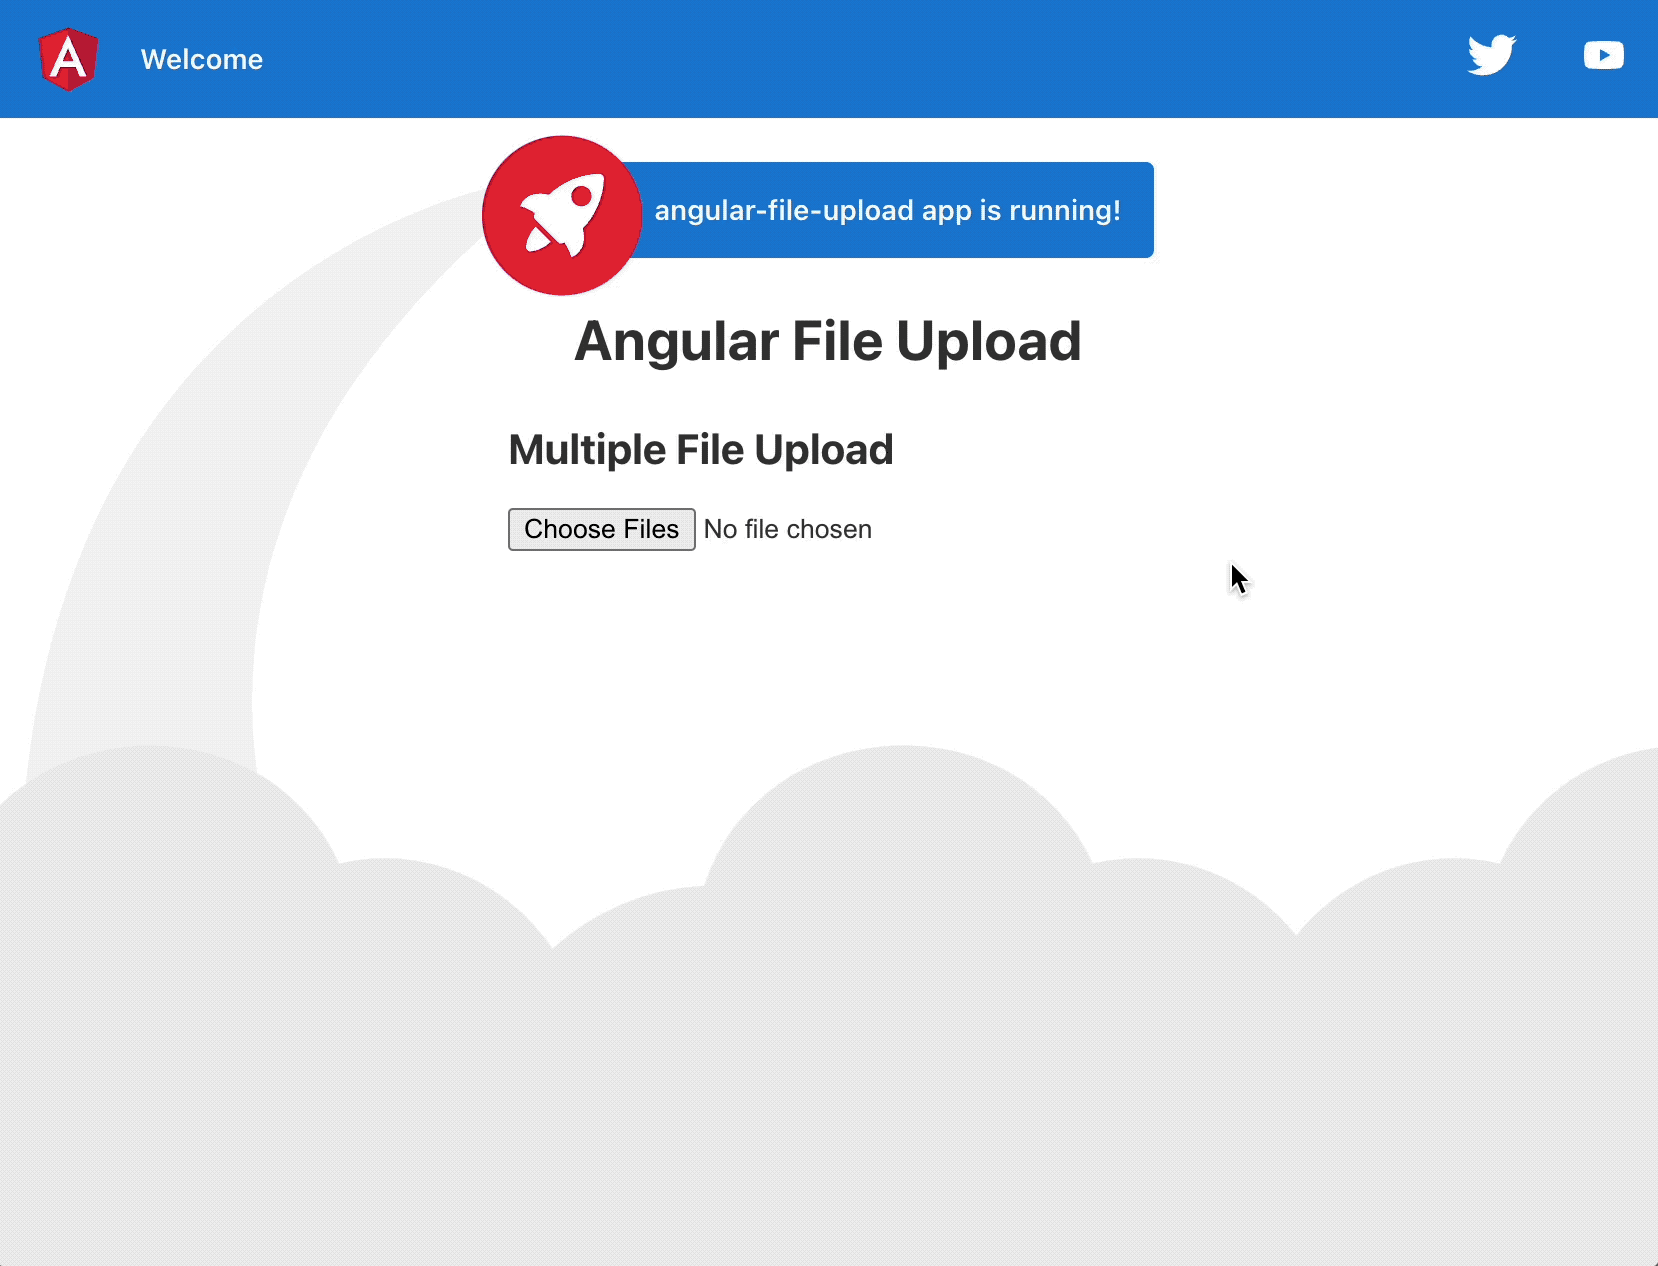 Multiple file uploading flow